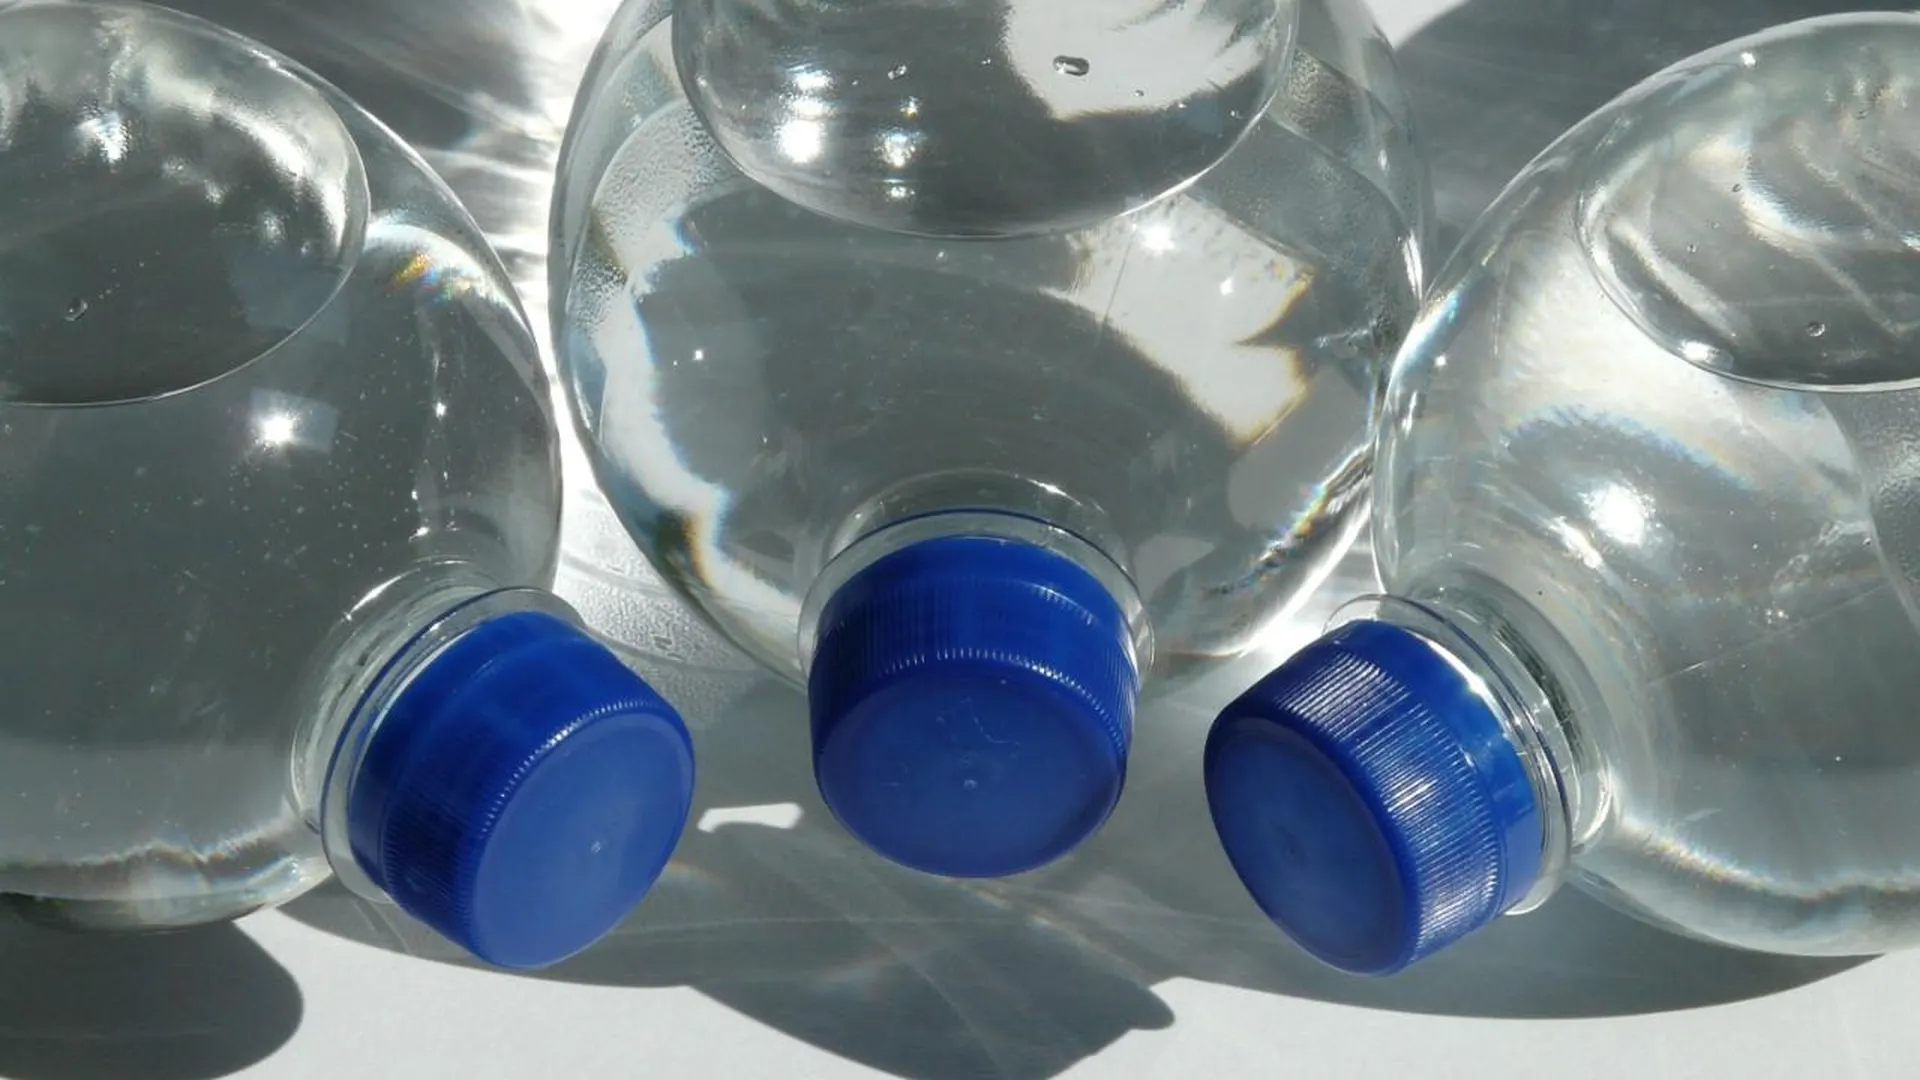 СМИ: ученые выявили опасные для человека частицы в бутилированной воде